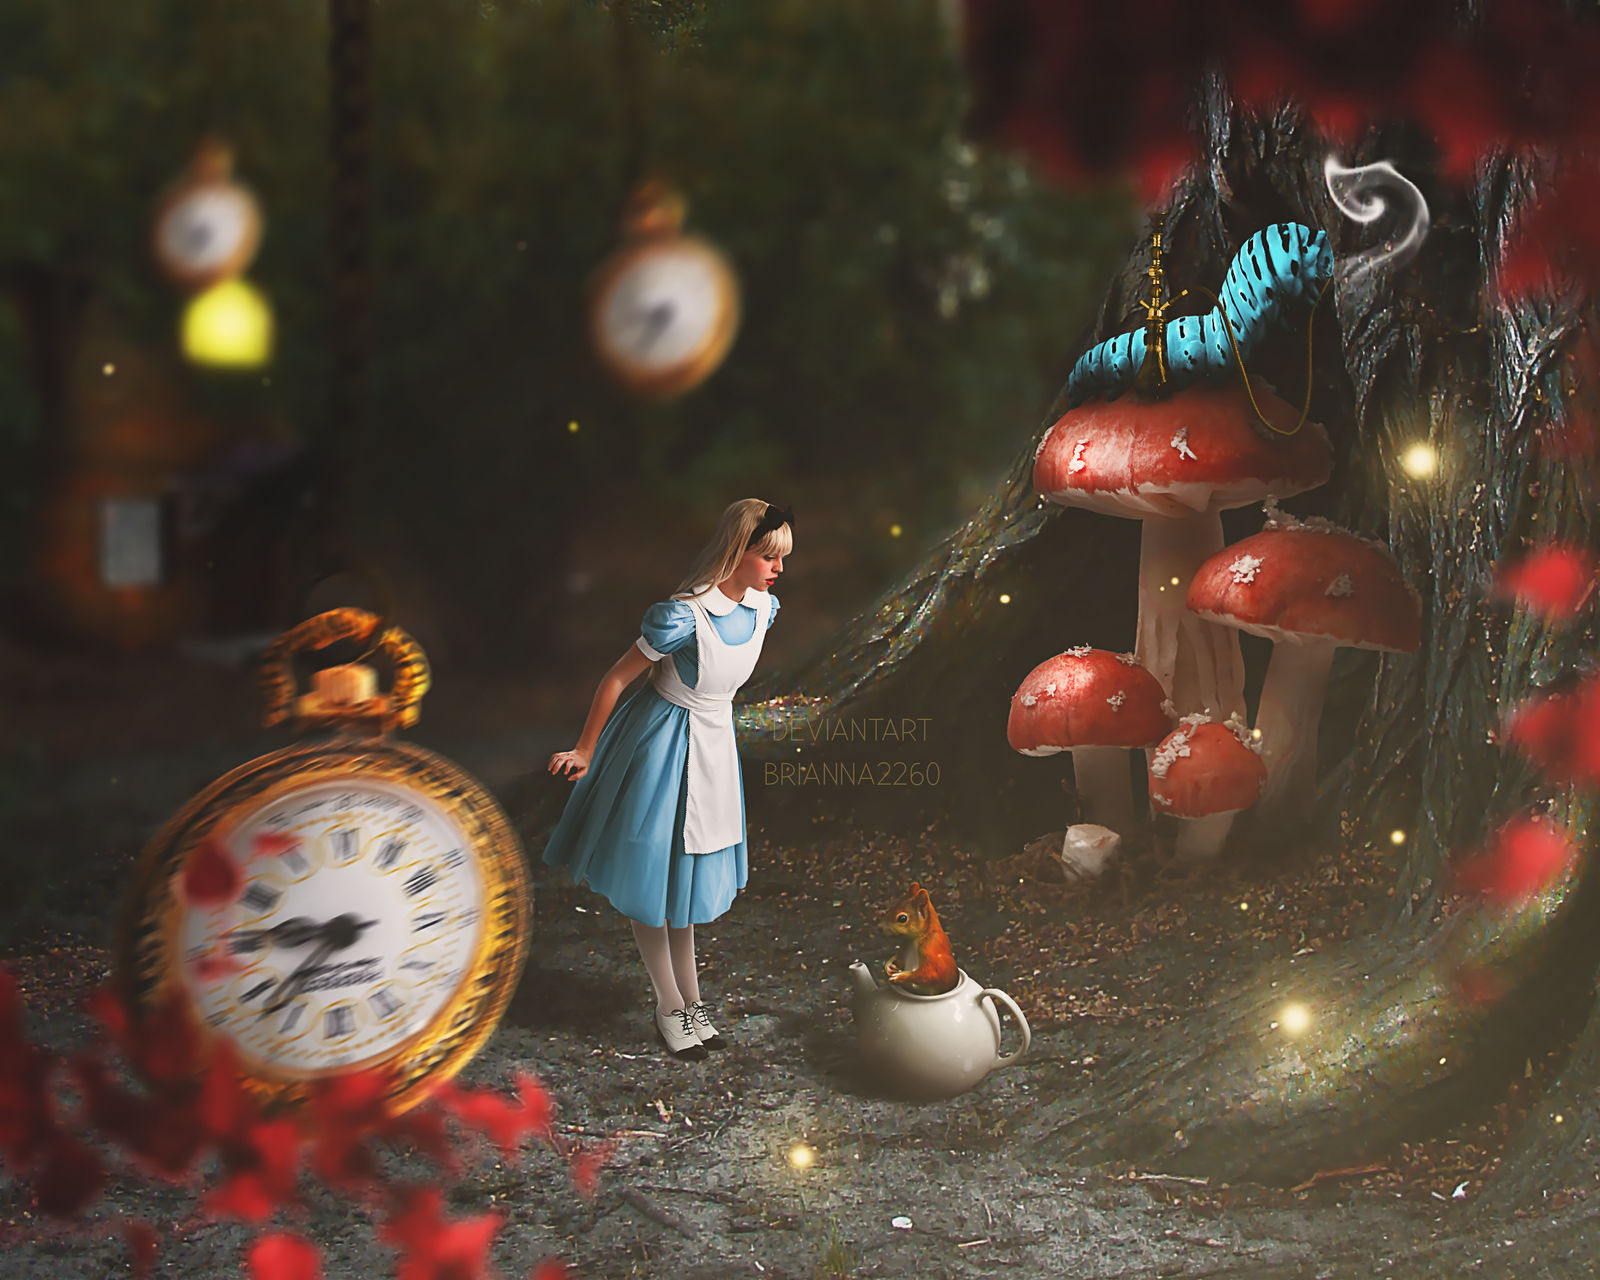 Alice in Wonderland - Accessories + by SaraFabrizi on DeviantArt